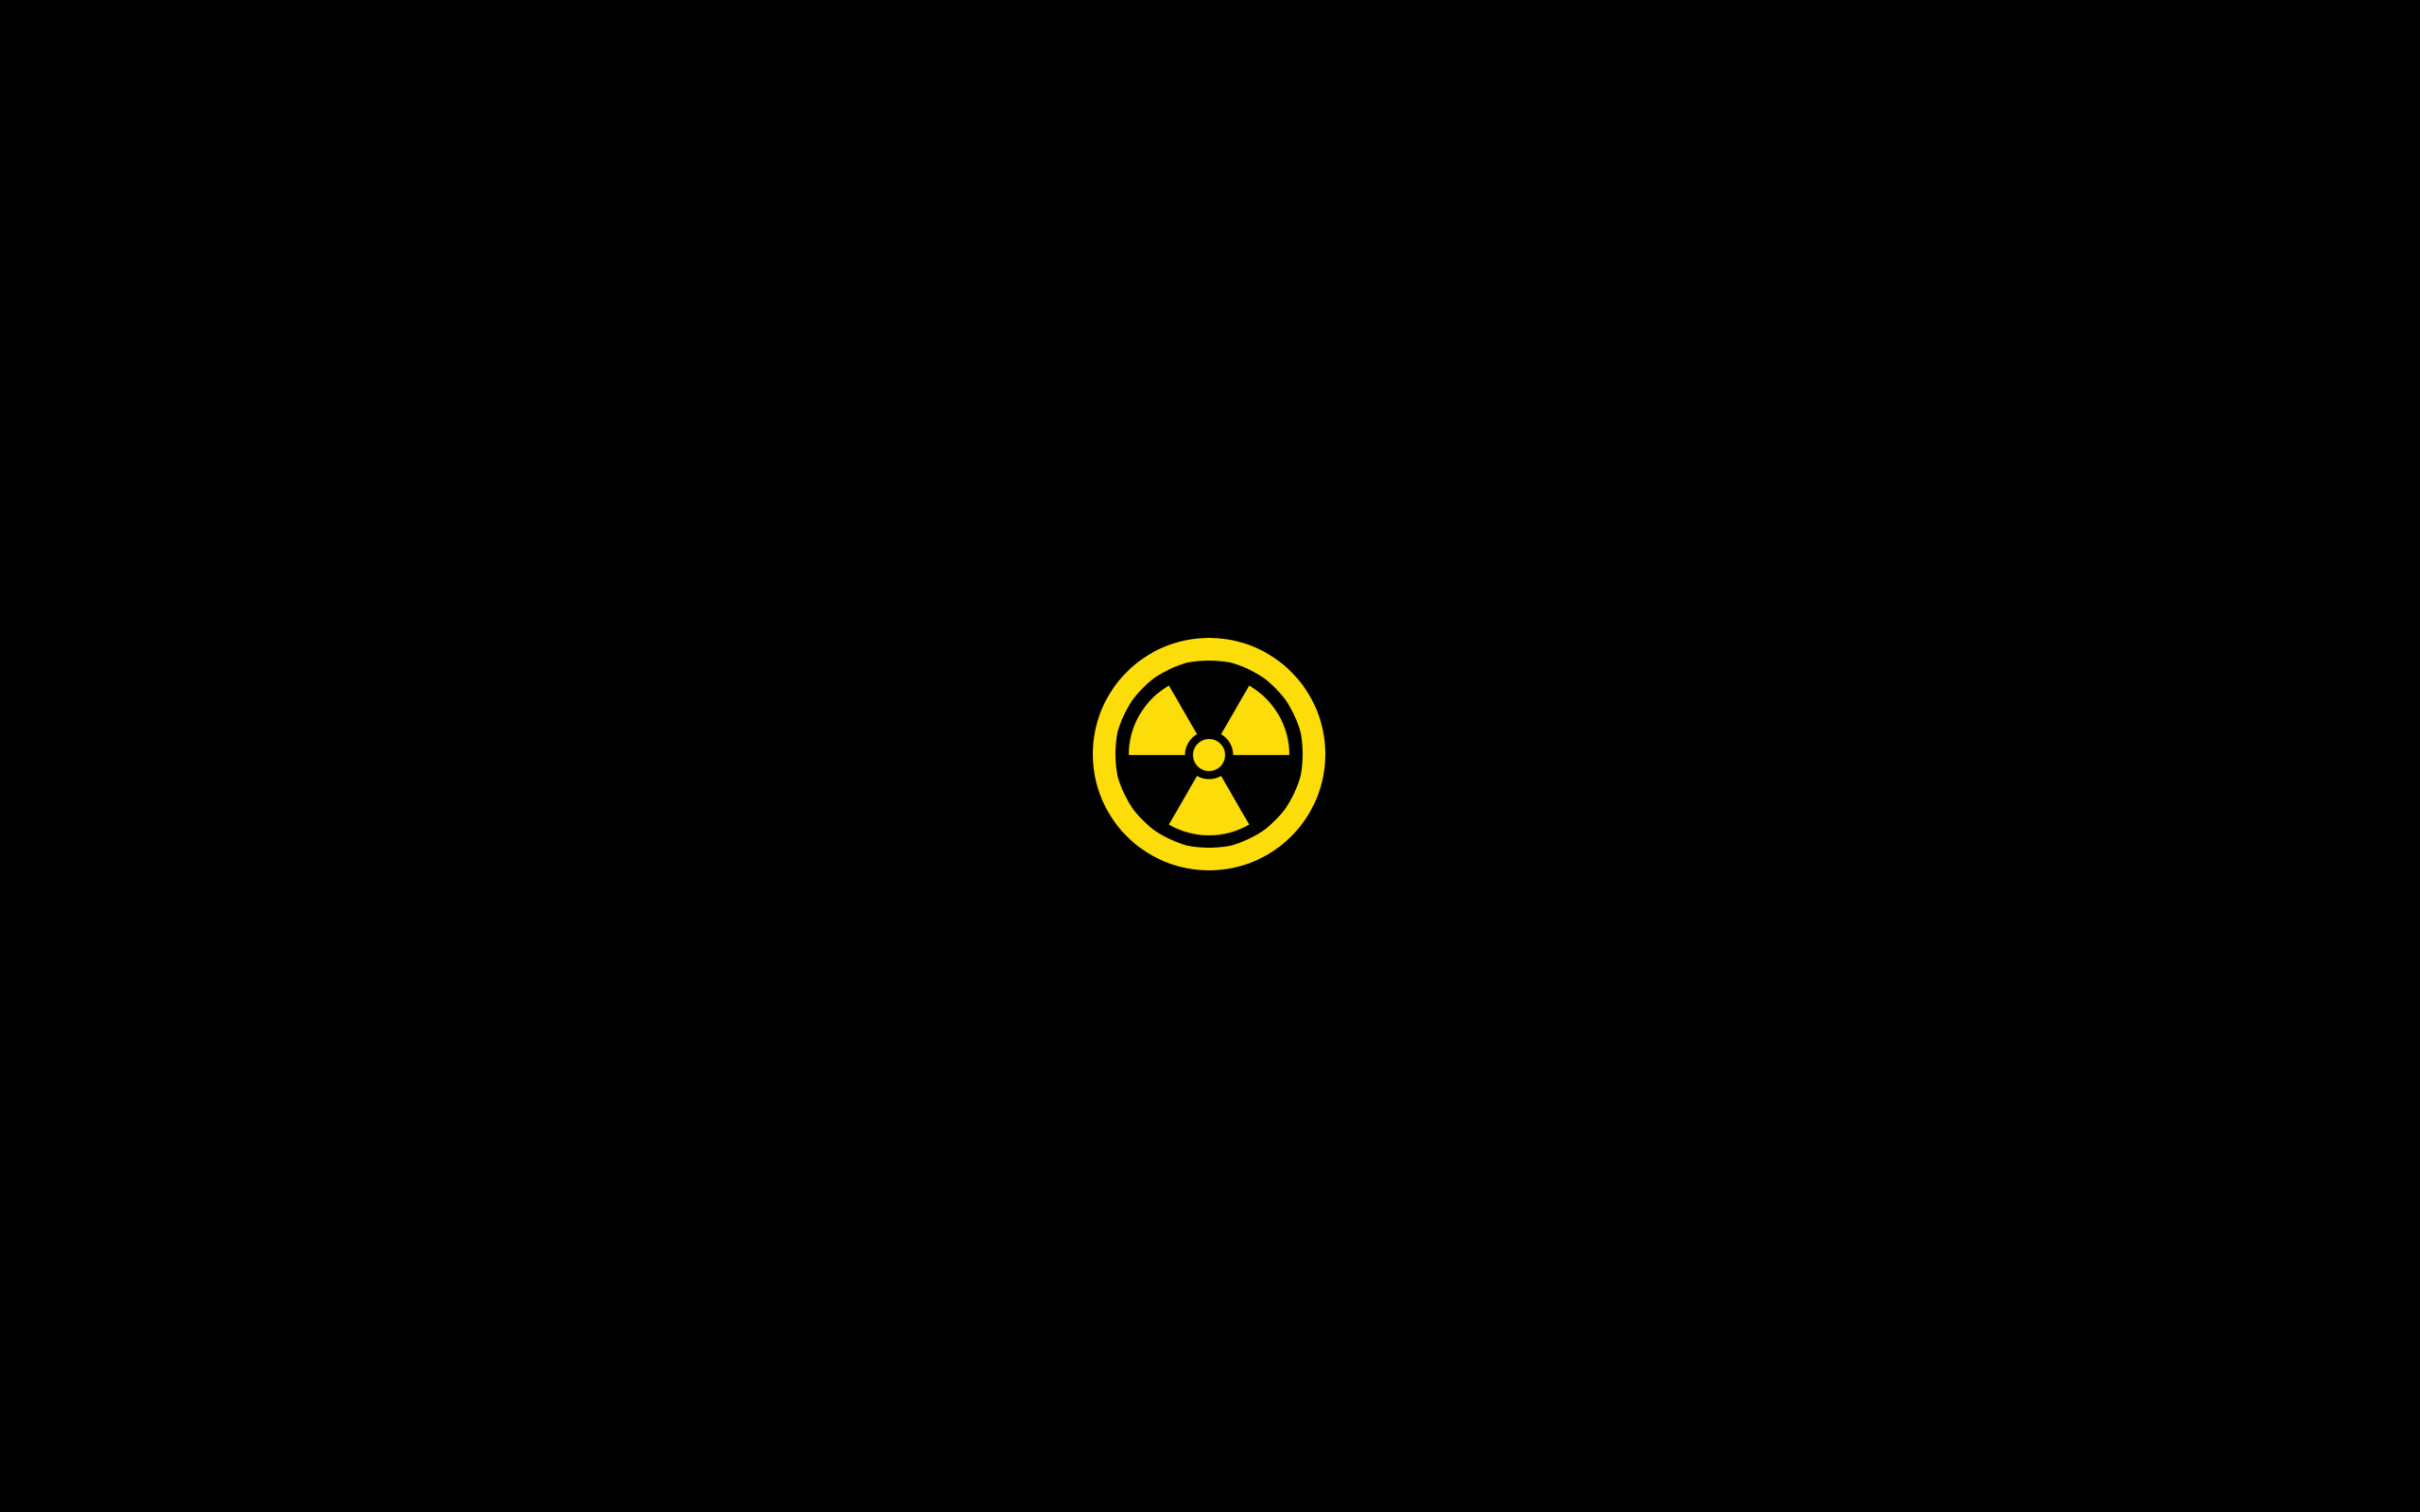 Nuclear symbol minimalist wallpaper